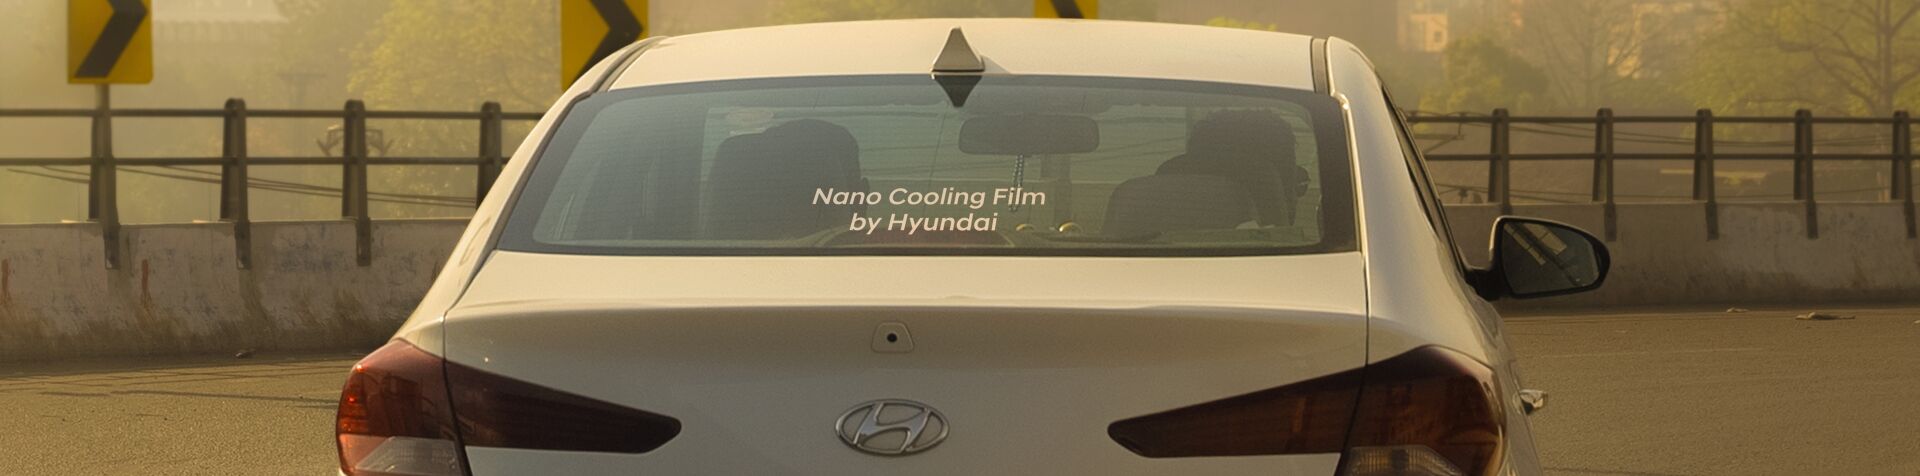 후면 유리에 “Nano Cooling Film by Hyundai”라는 문구가 적힌 아반떼의 뒷모습입니다.